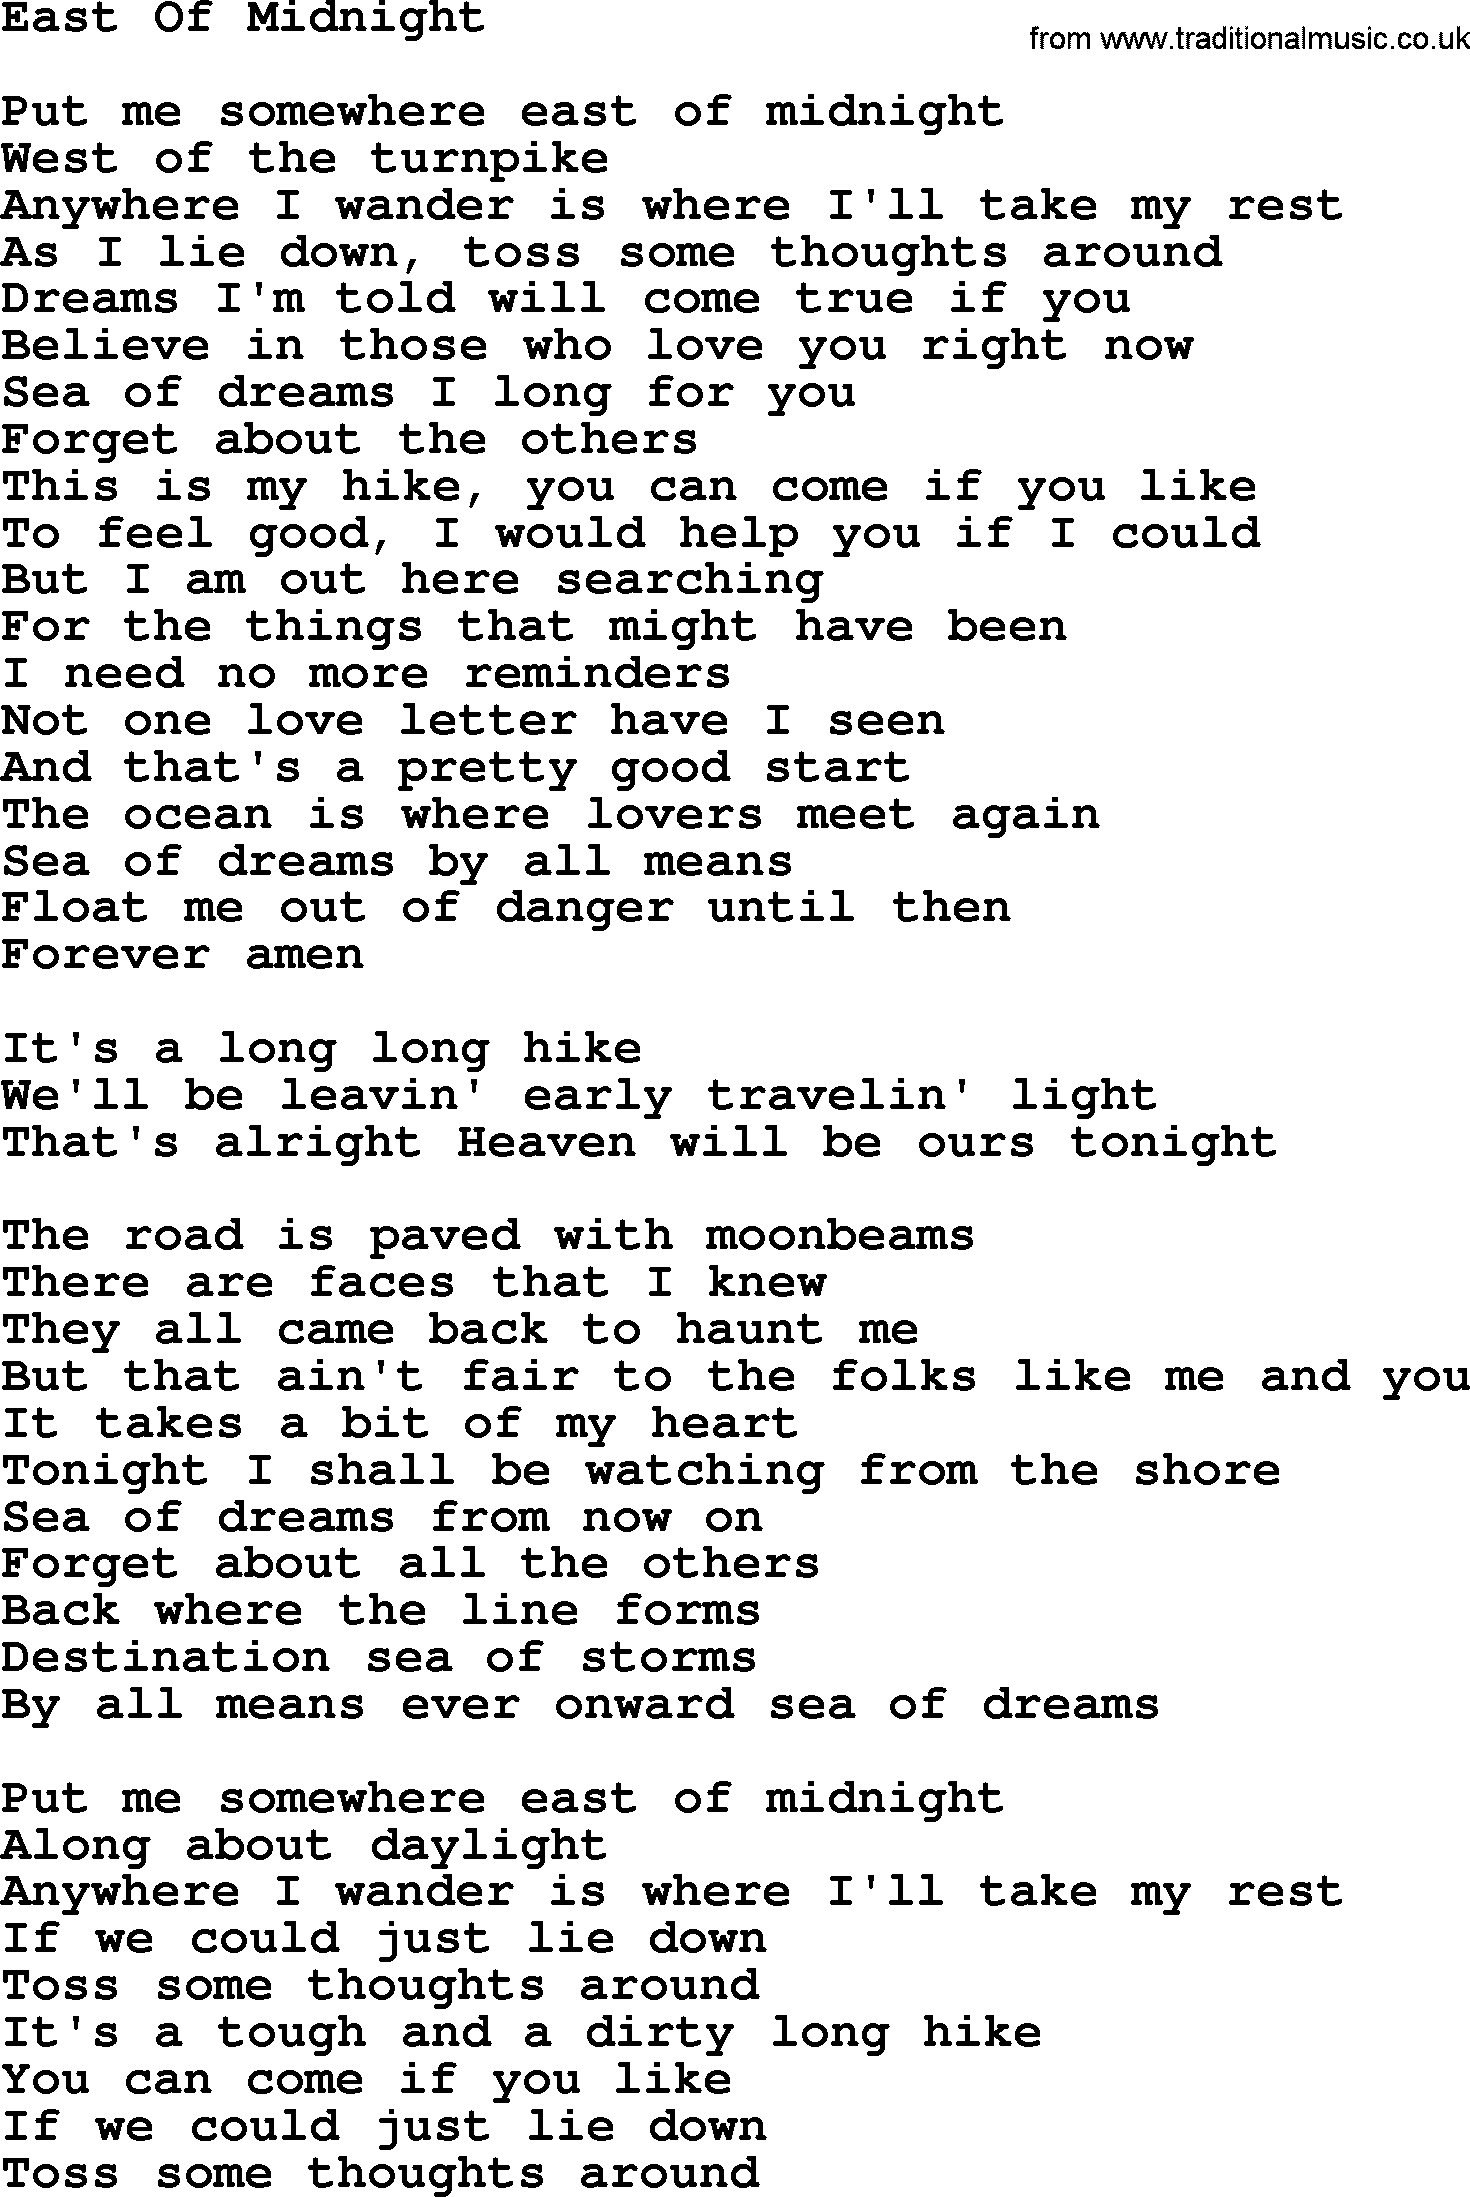 Gordon Lightfoot song East Of Midnight, lyrics